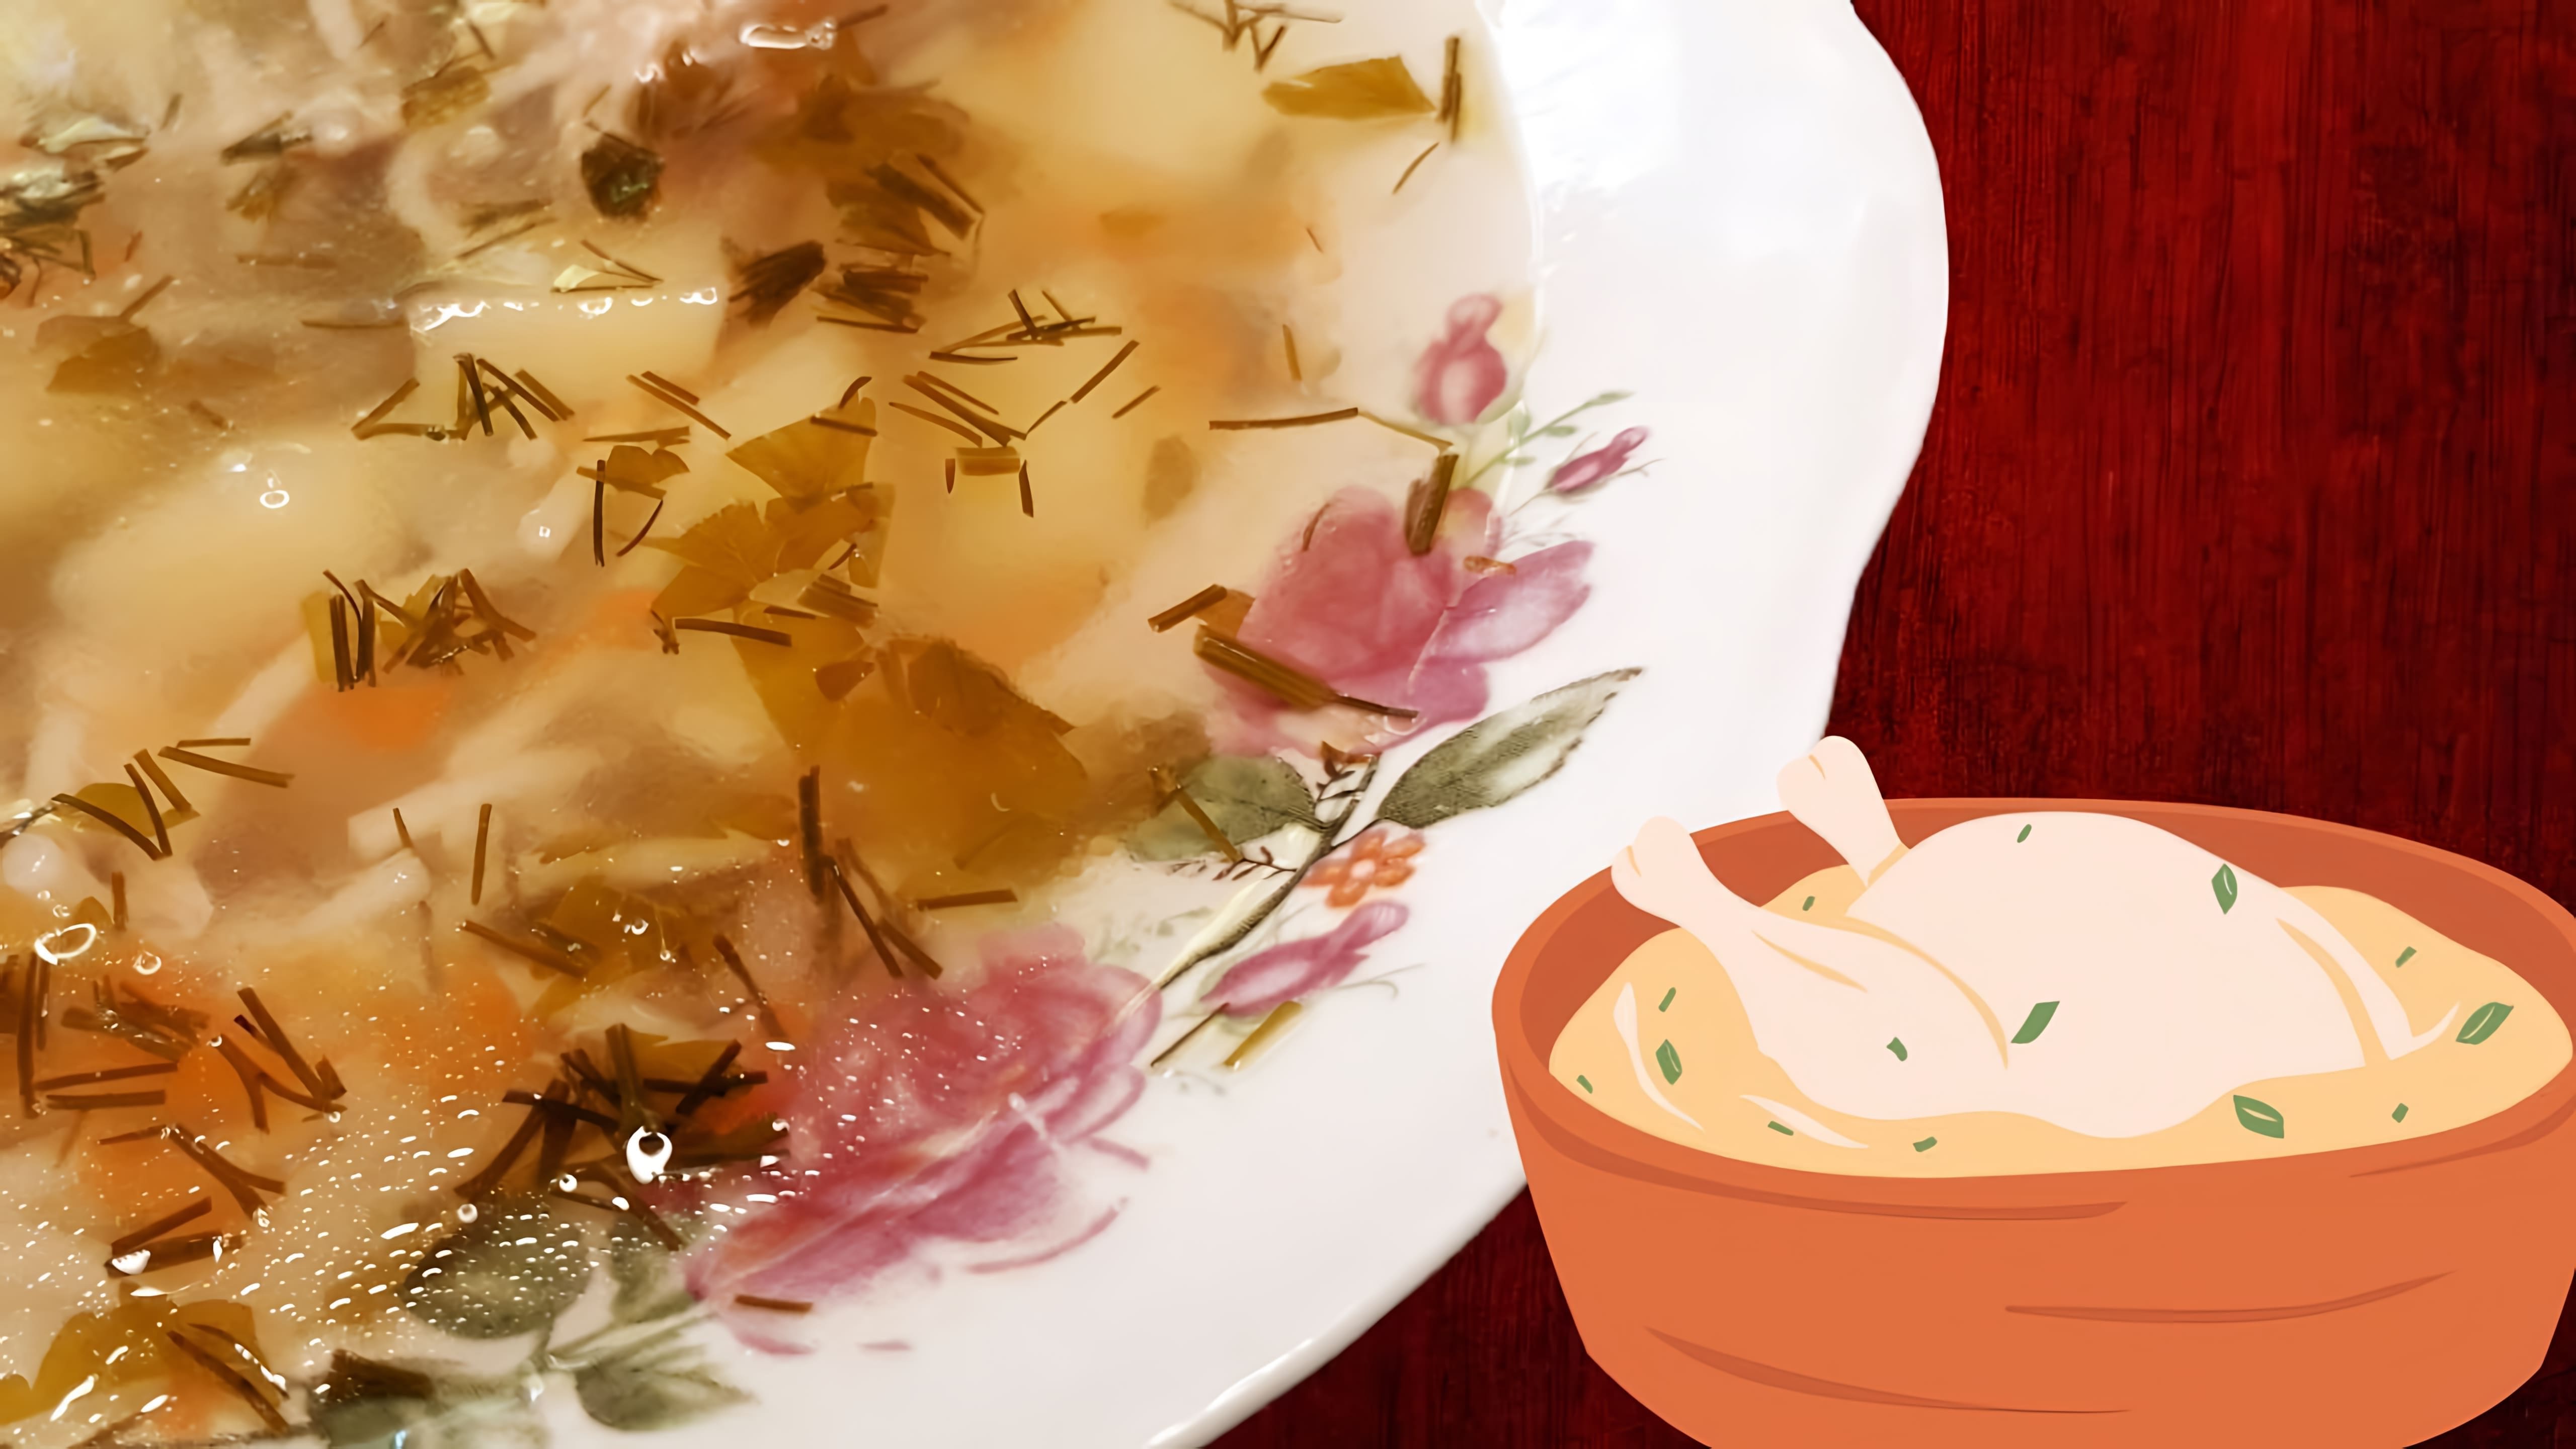 В этом видео демонстрируется рецепт приготовления куриного супа, который напоминает вкус детства